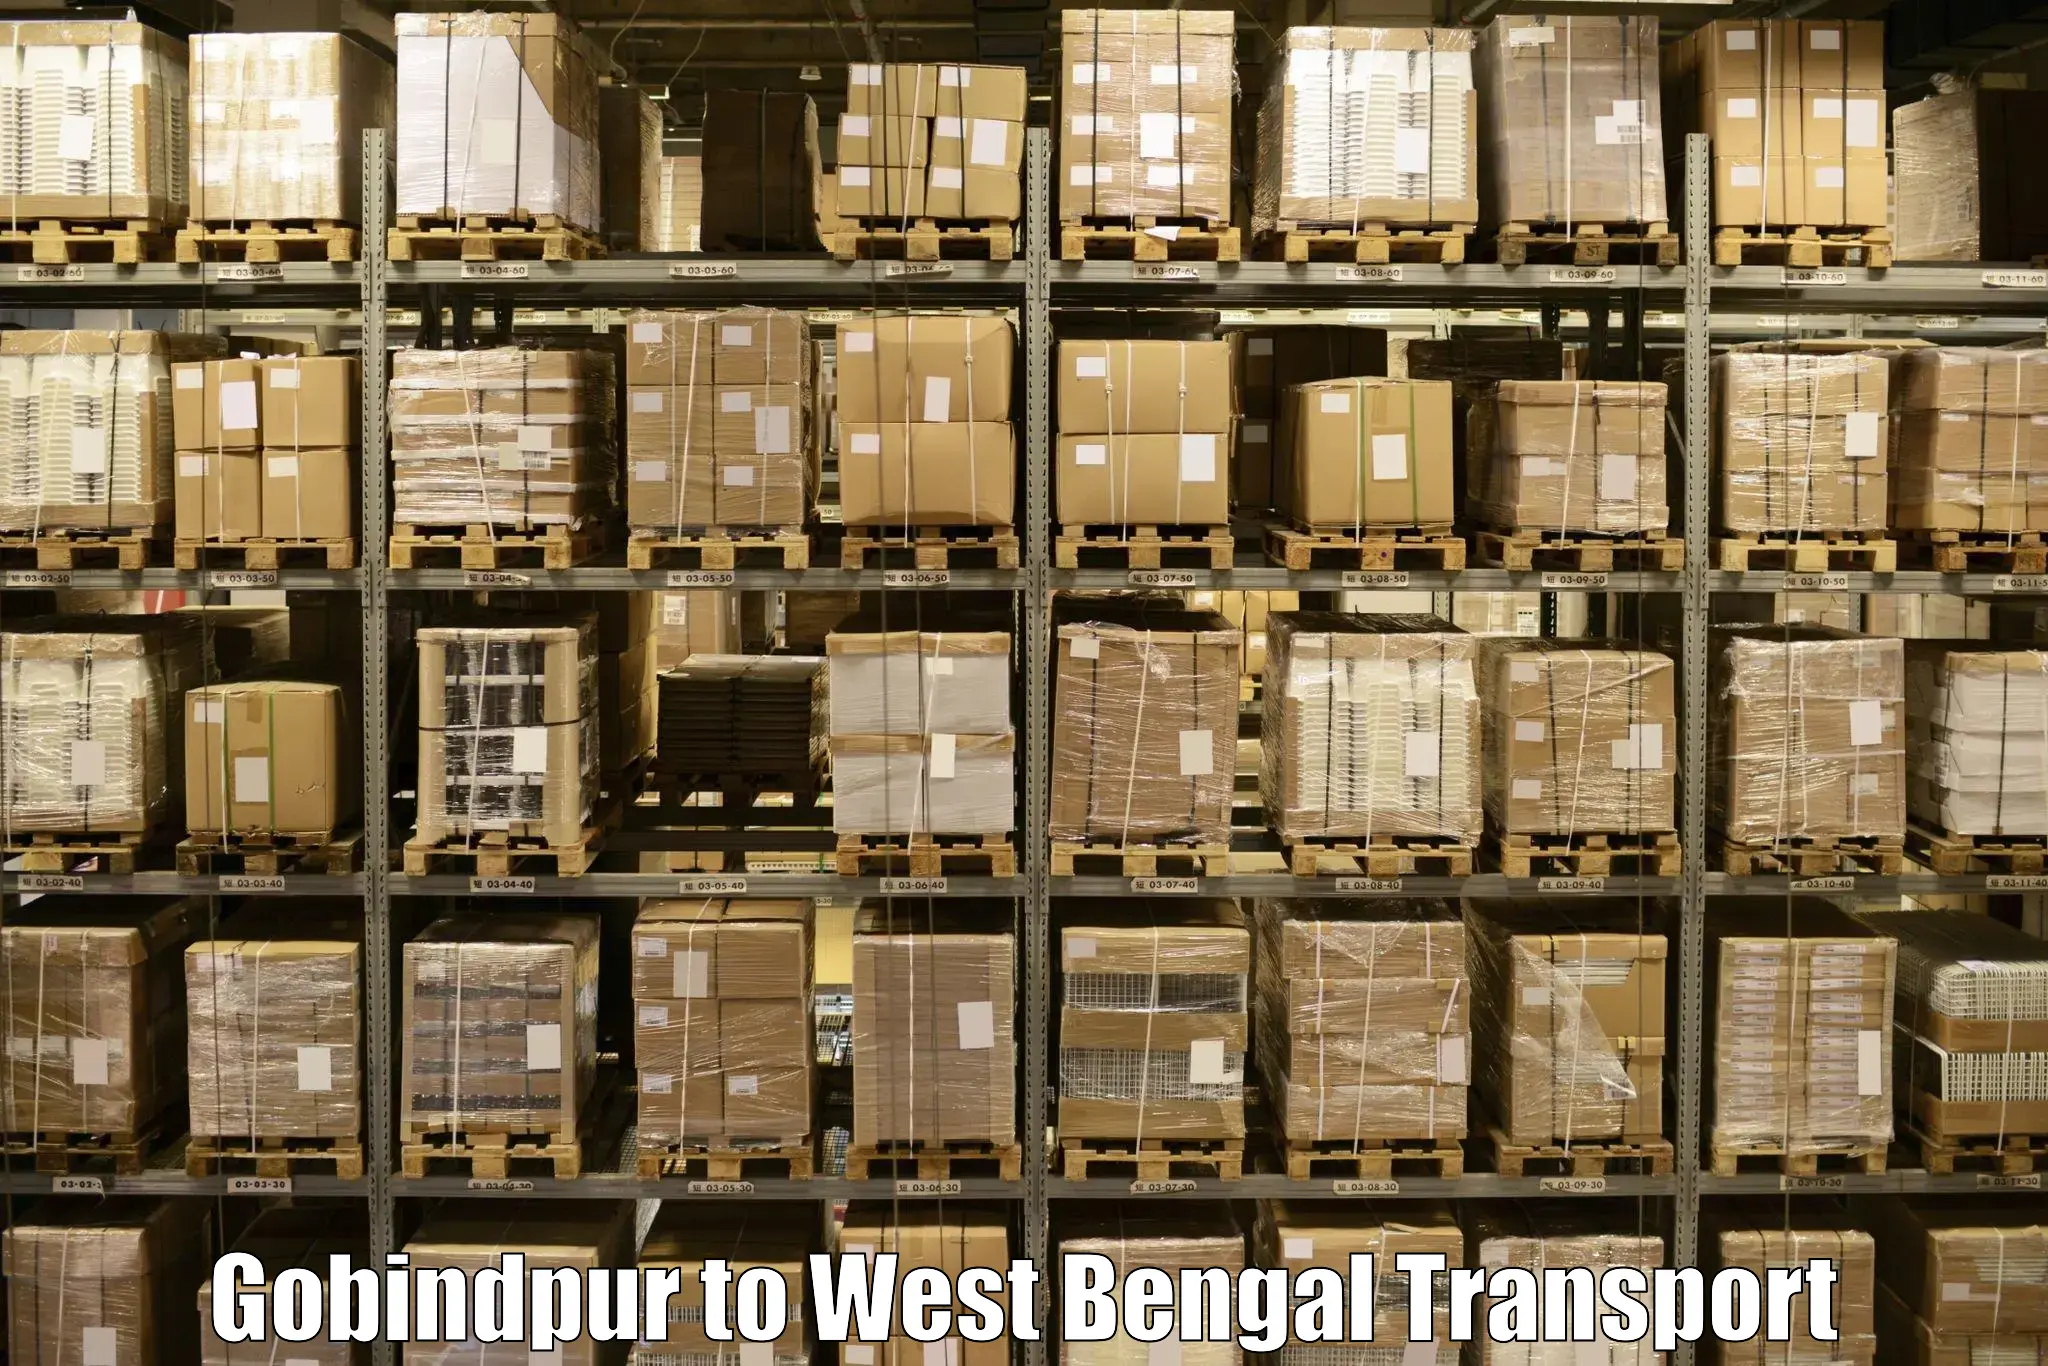 Goods delivery service Gobindpur to Bandel